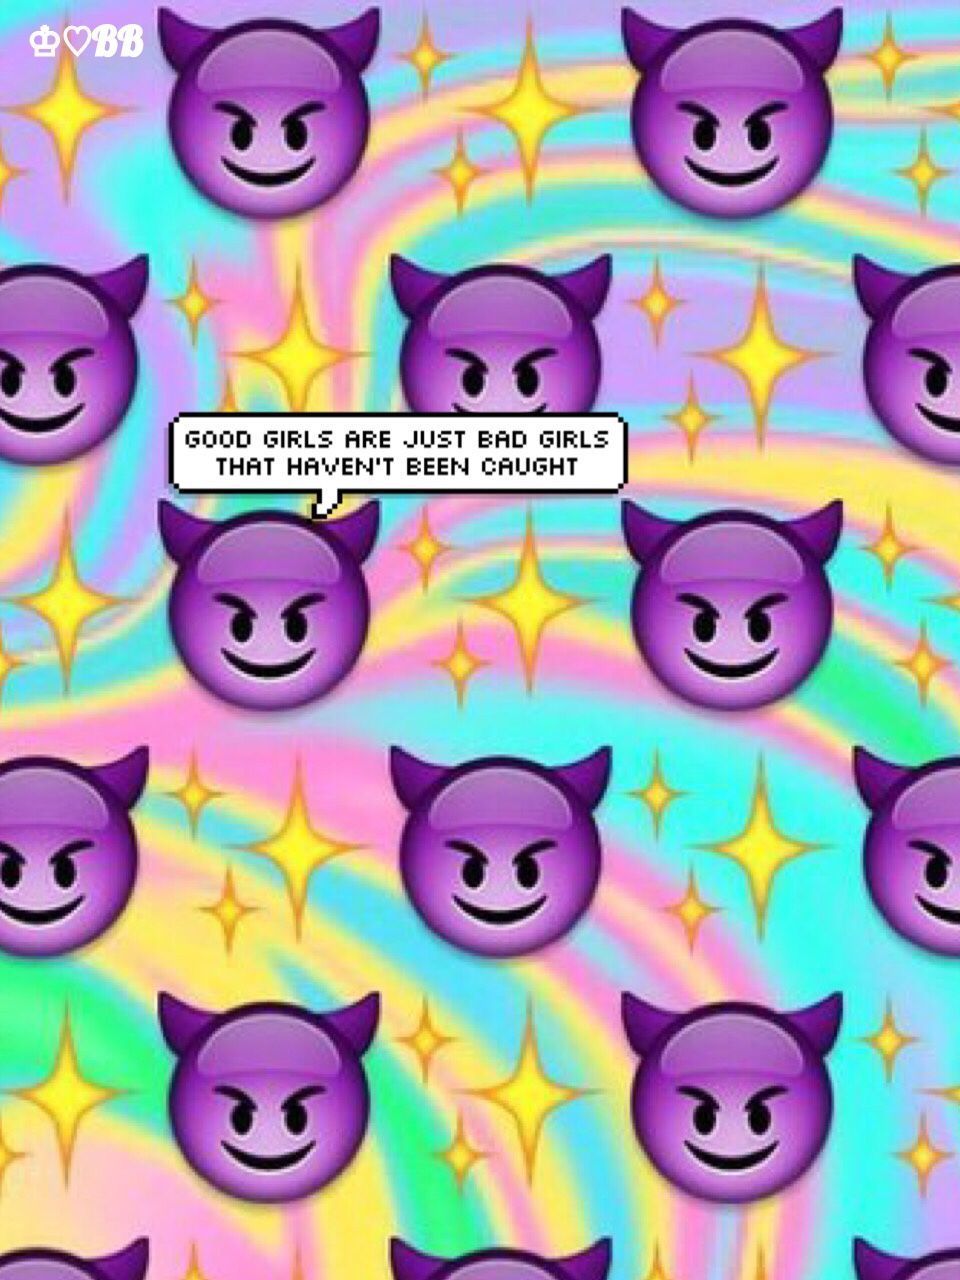 Emojis Galaxy Wallpapers on WallpaperDog